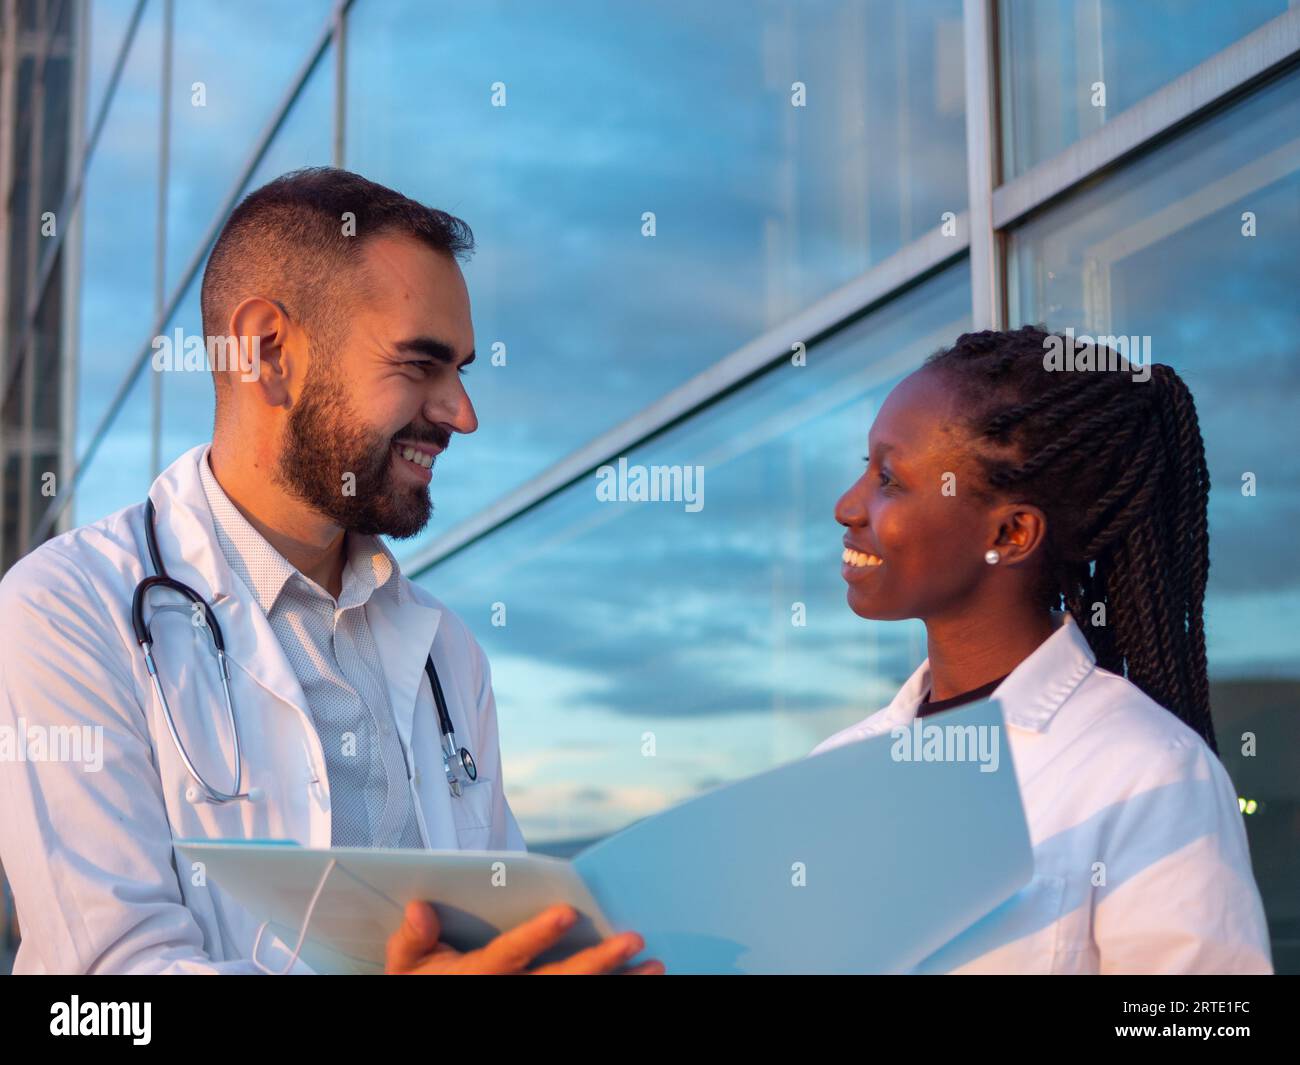 Dos médicos del hospital, una mujer y un hombre, tomando un descanso al aire libre. Mirándose el uno al otro mientras sonríe. Foto de stock